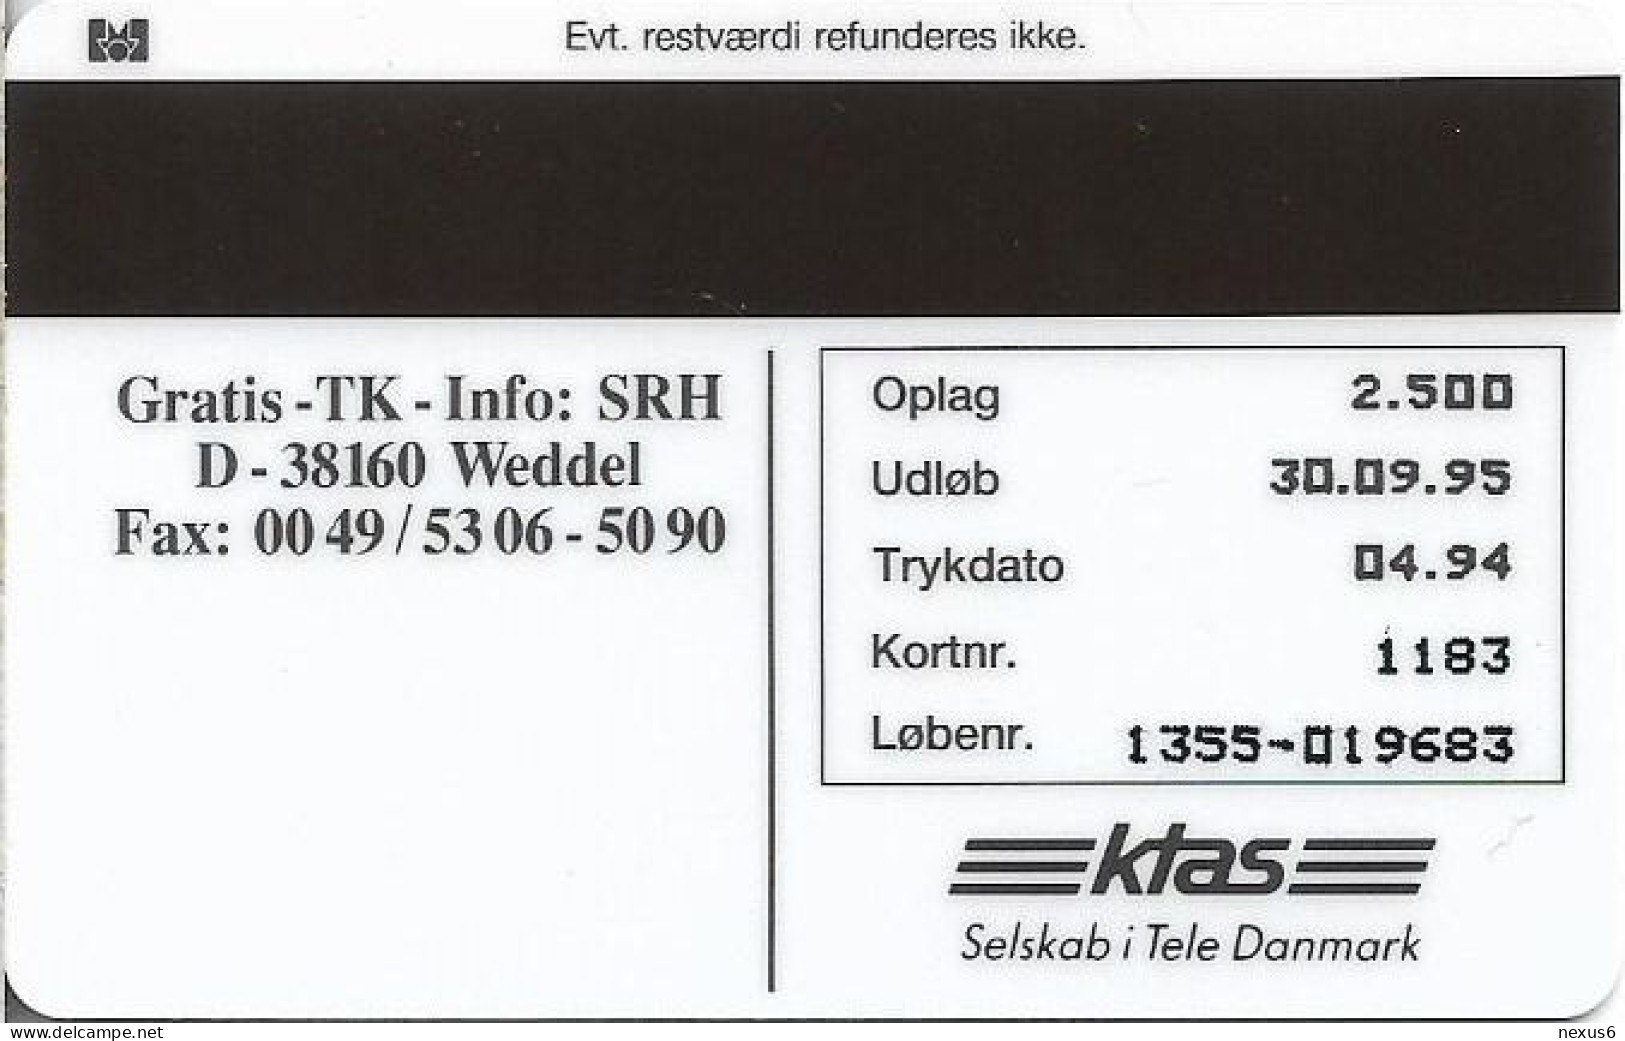 Denmark - KTAS - Ships (Green) - Normandie - TDKP083 - 04.1994, 2.500ex, 5kr, Used - Dänemark